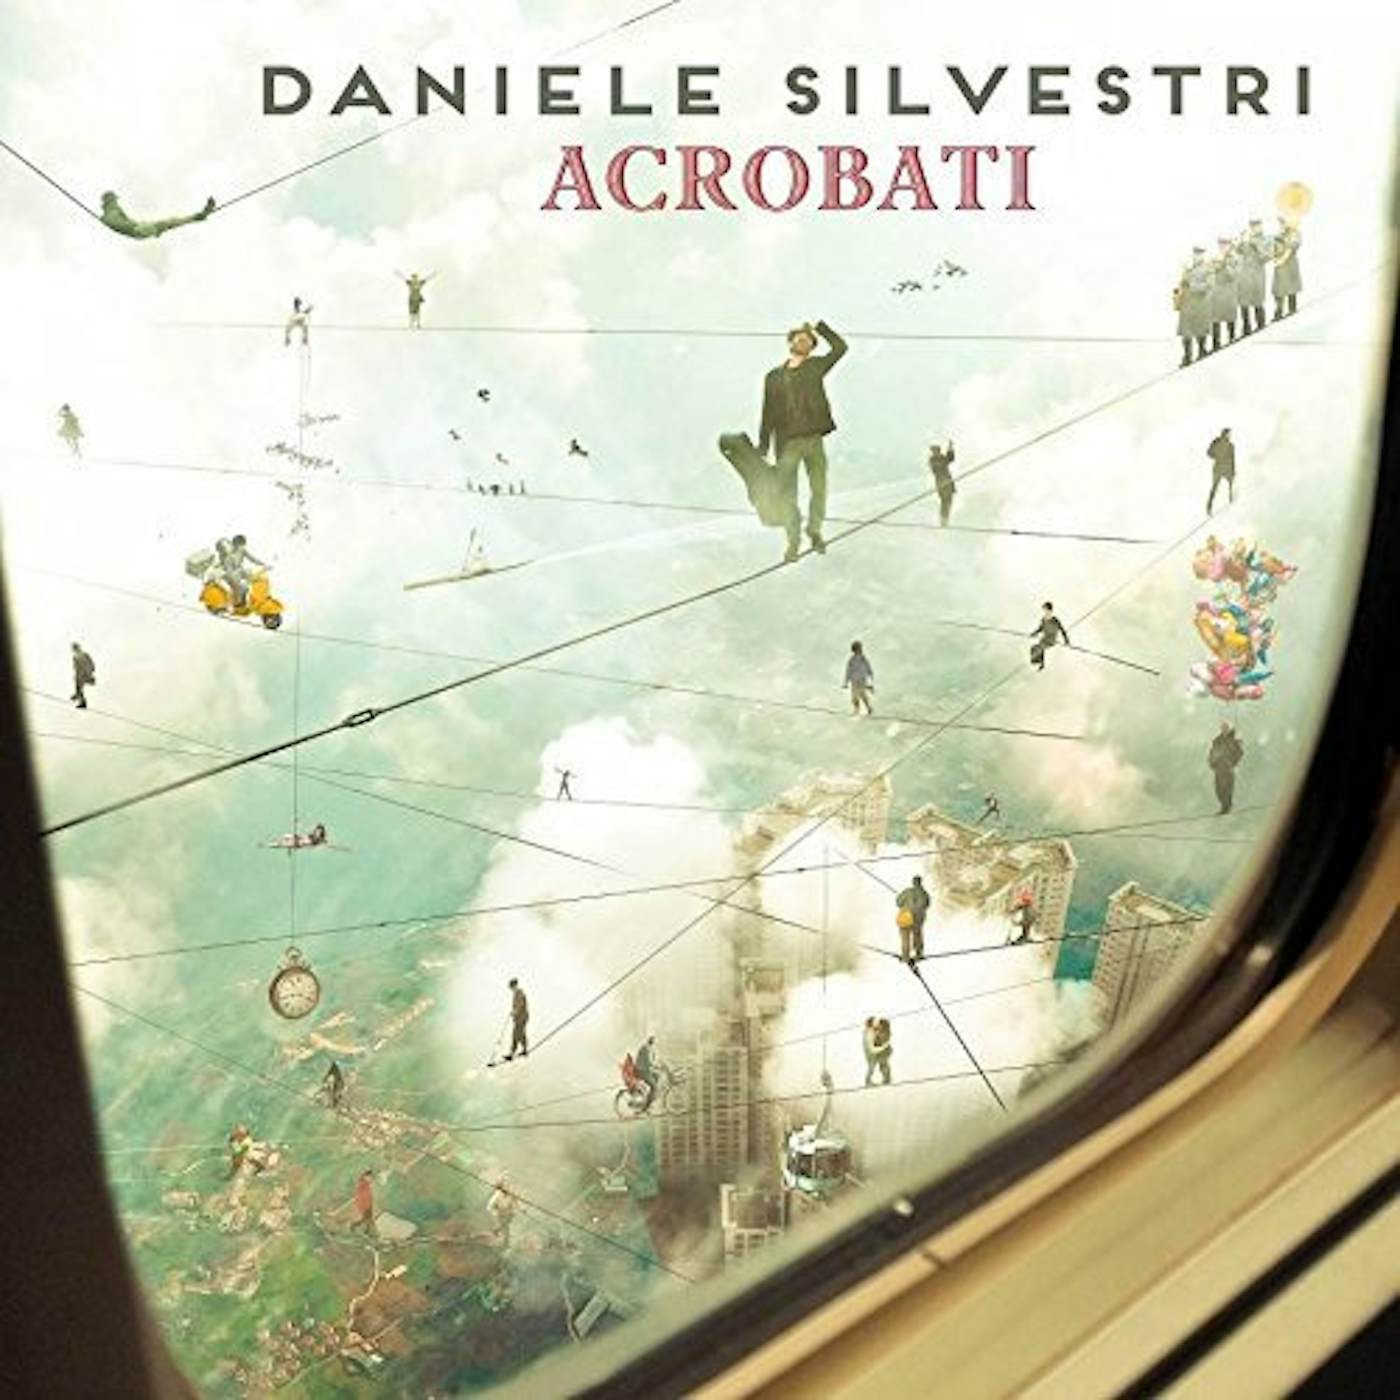 Daniele Silvestri ACROBATI CD